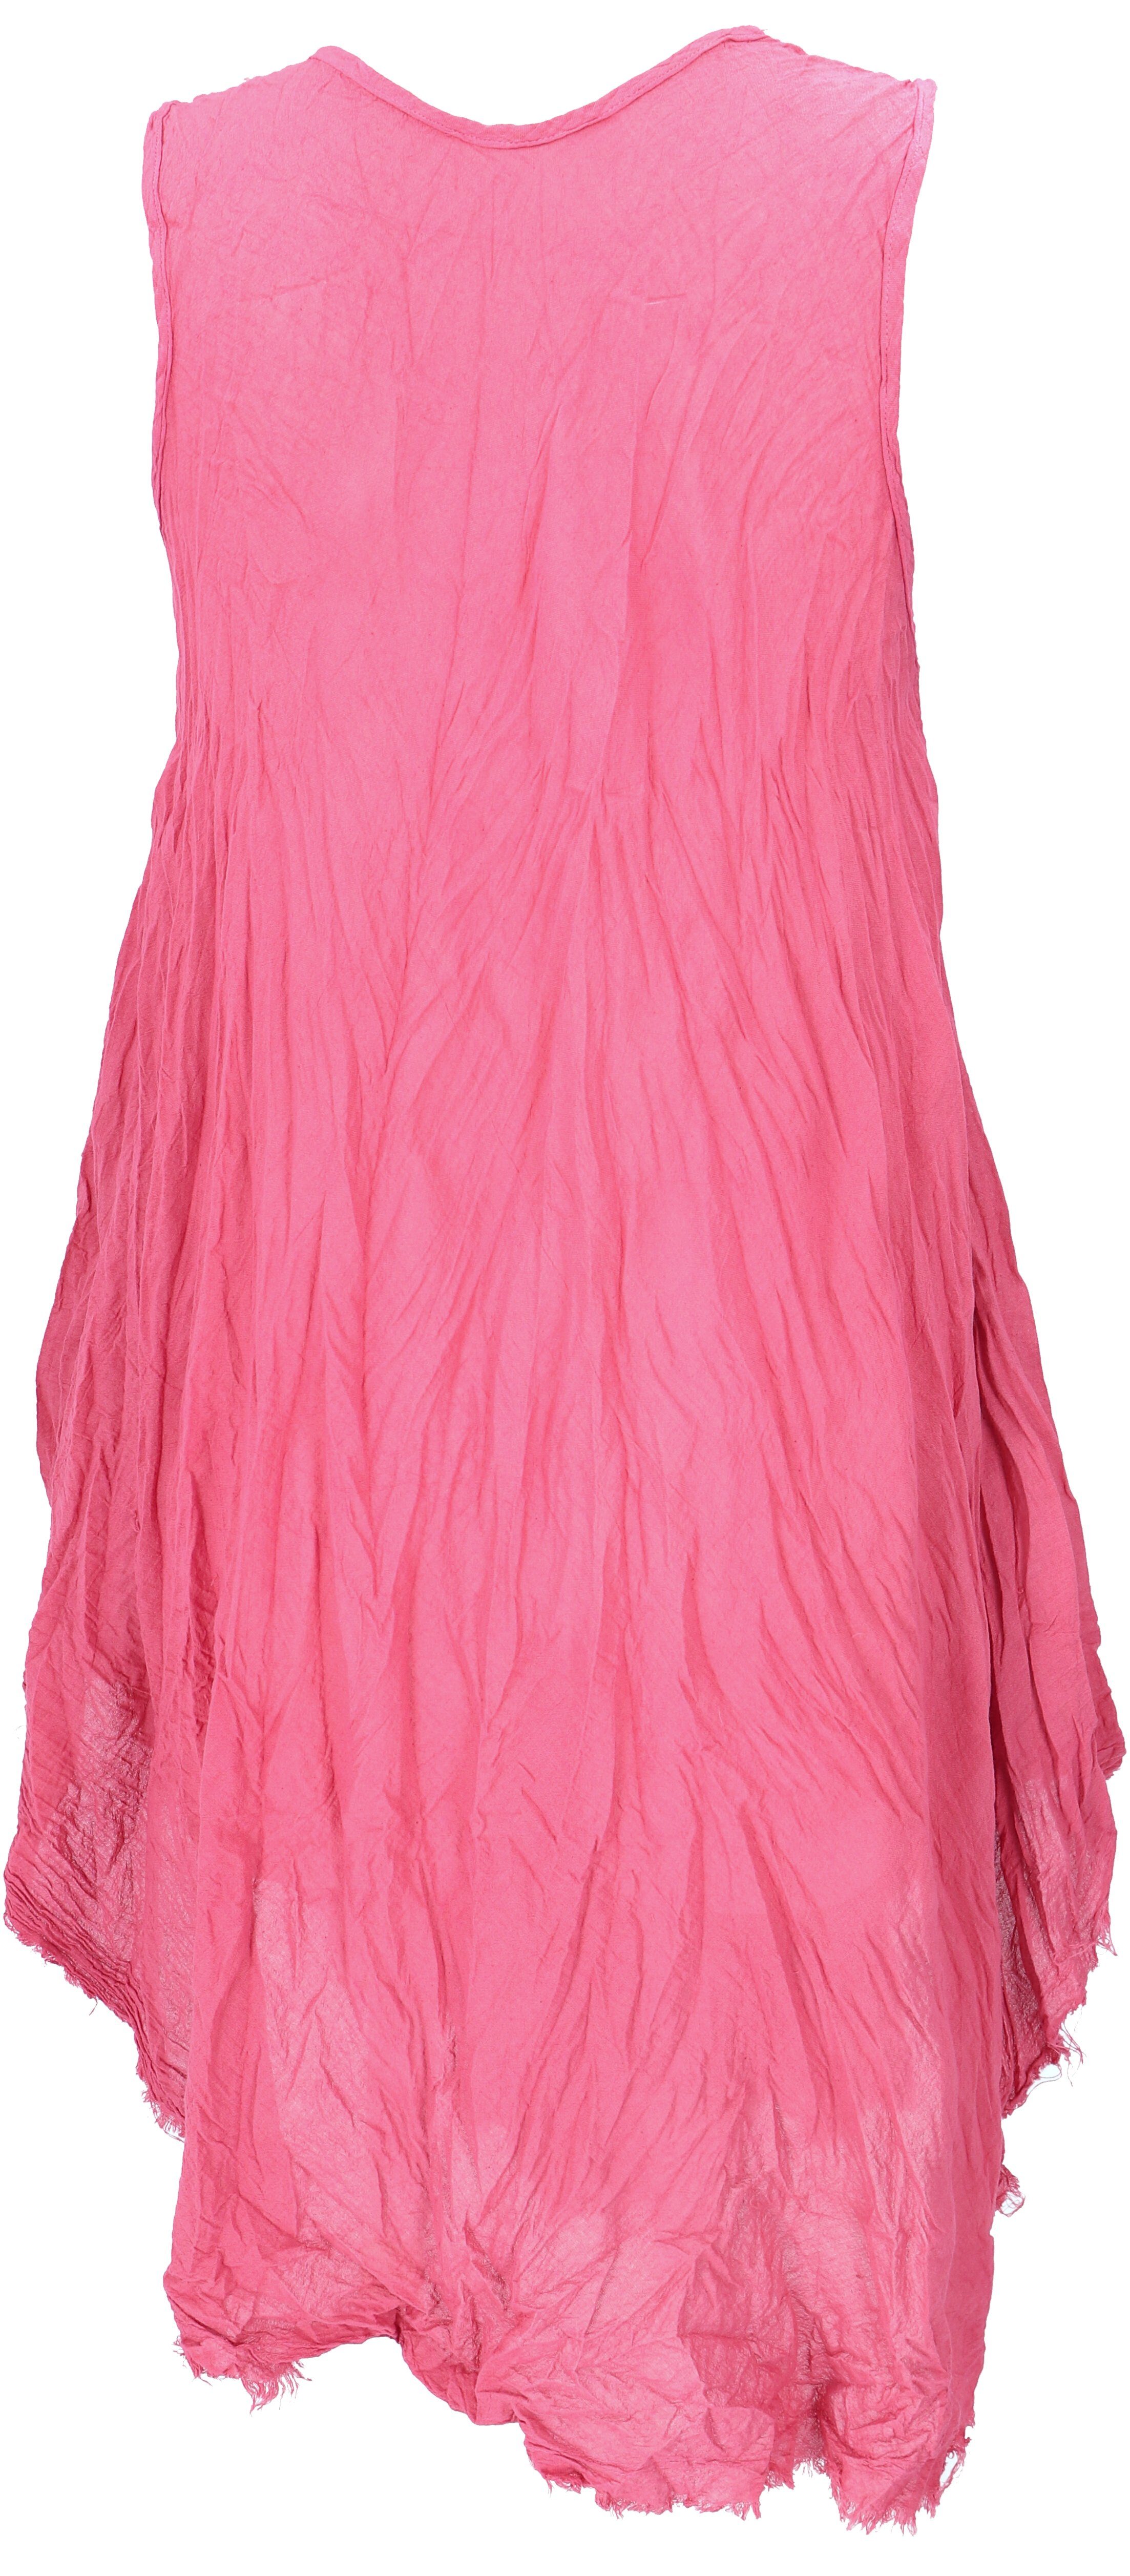 Boho Guru-Shop luftiges Midikleid alternative Bekleidung pink Krinkelkleid,.. Sommerkleid,